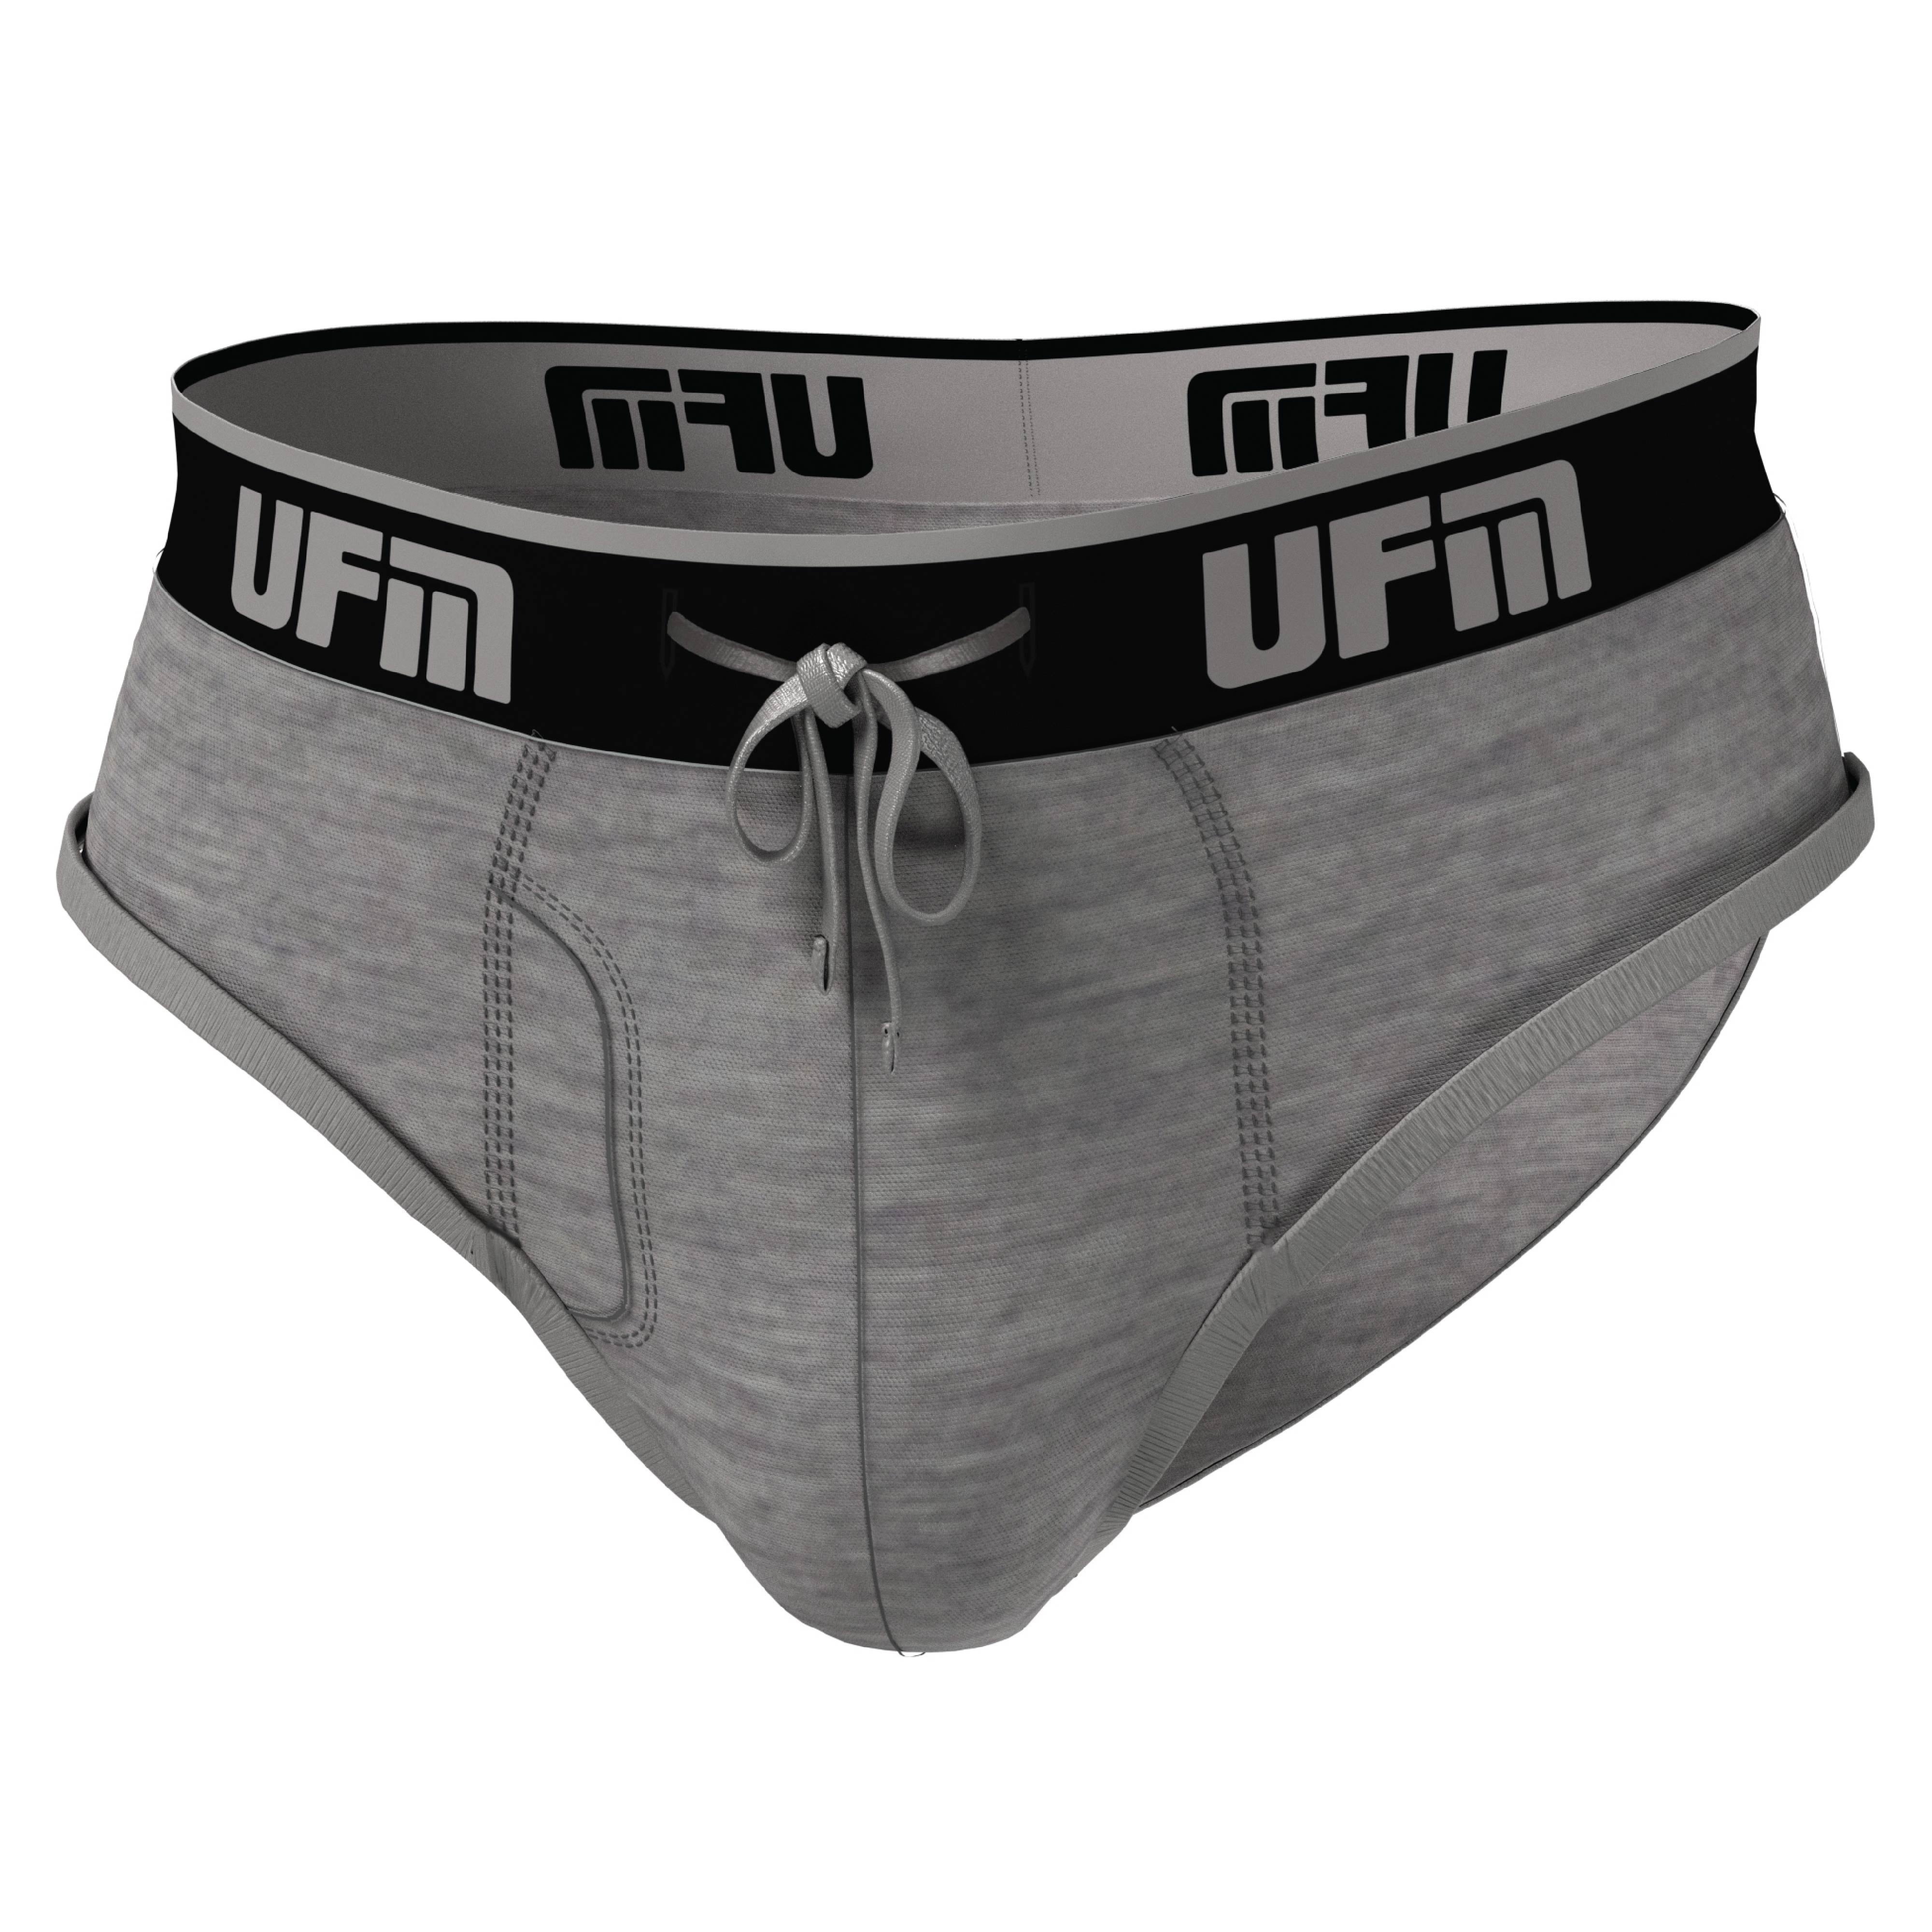 https://i5.walmartimages.com/seo/UFM-Mens-Underwear-Polyester-Spandex-Mens-Briefs-Regular-and-Adjustable-Support-Pouch-Men-Underwear-44-46-waist-Gray_147fca20-cb8a-4cdb-8373-3c3c9388015b.a70765d4a4db1e3537b91c08fd940bab.jpeg